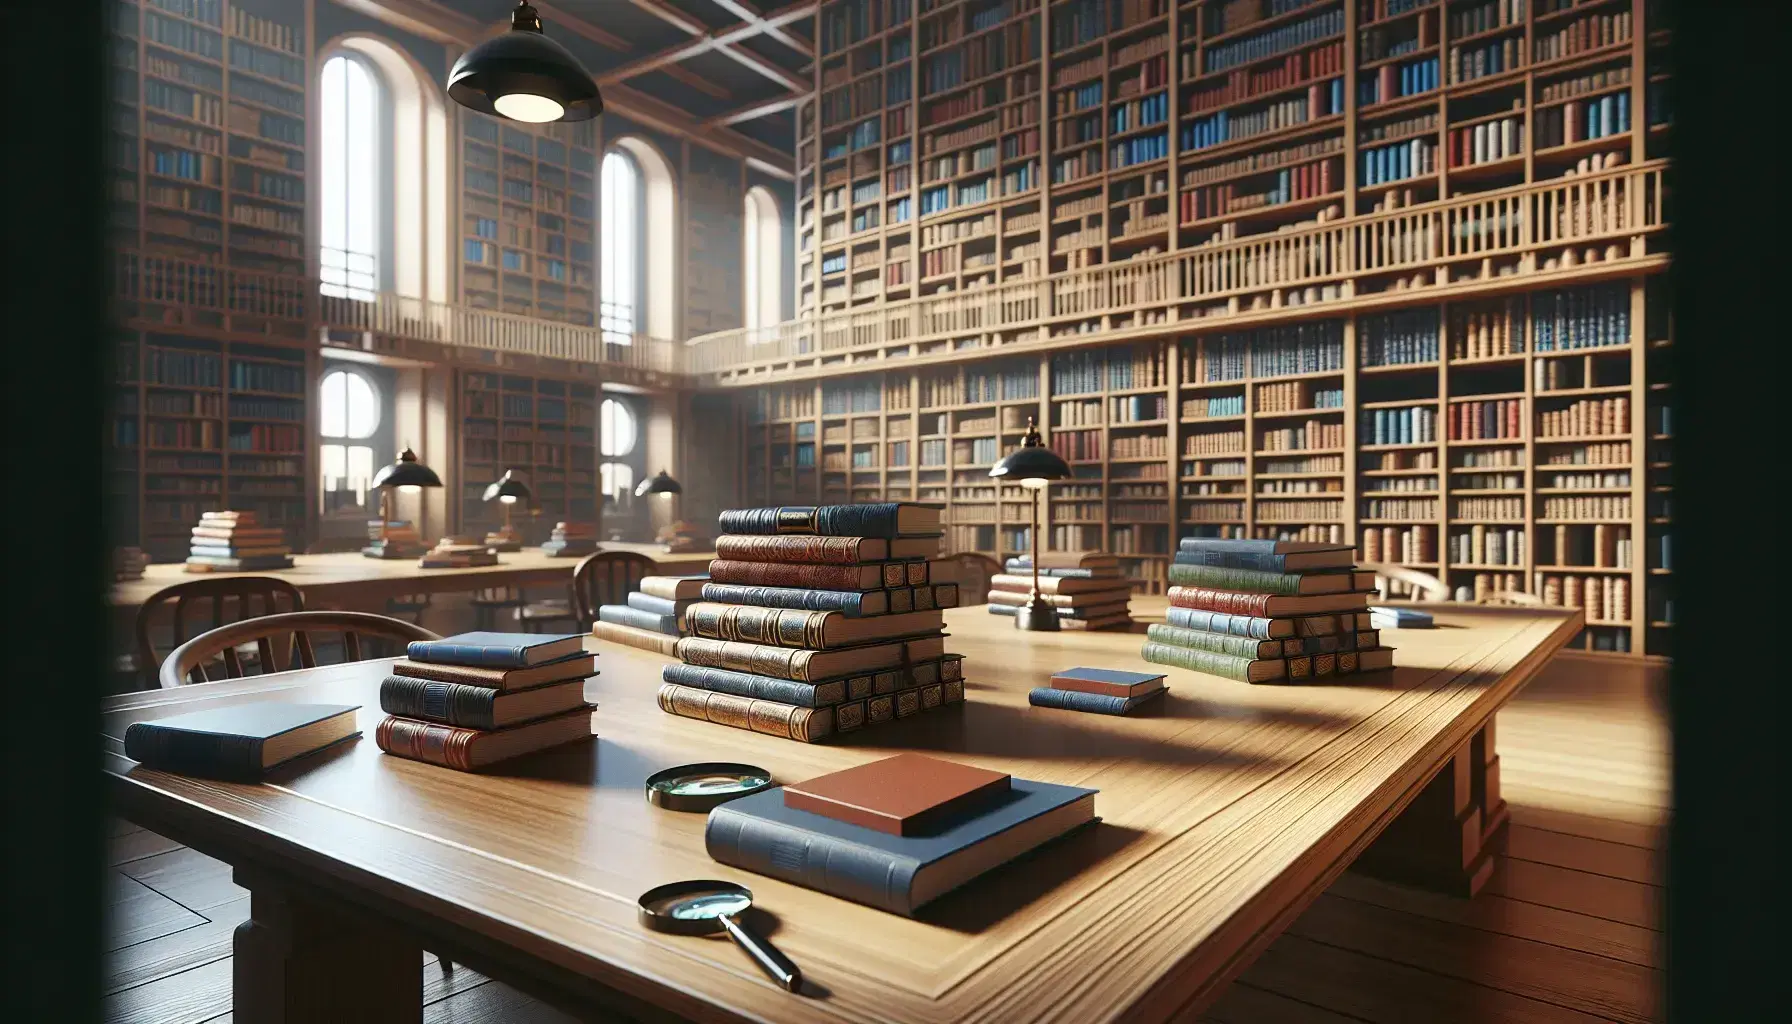 Biblioteca amplia y luminosa con mesa de madera y libros apilados, lupa, estantes repletos de libros y silla con cojín beige.